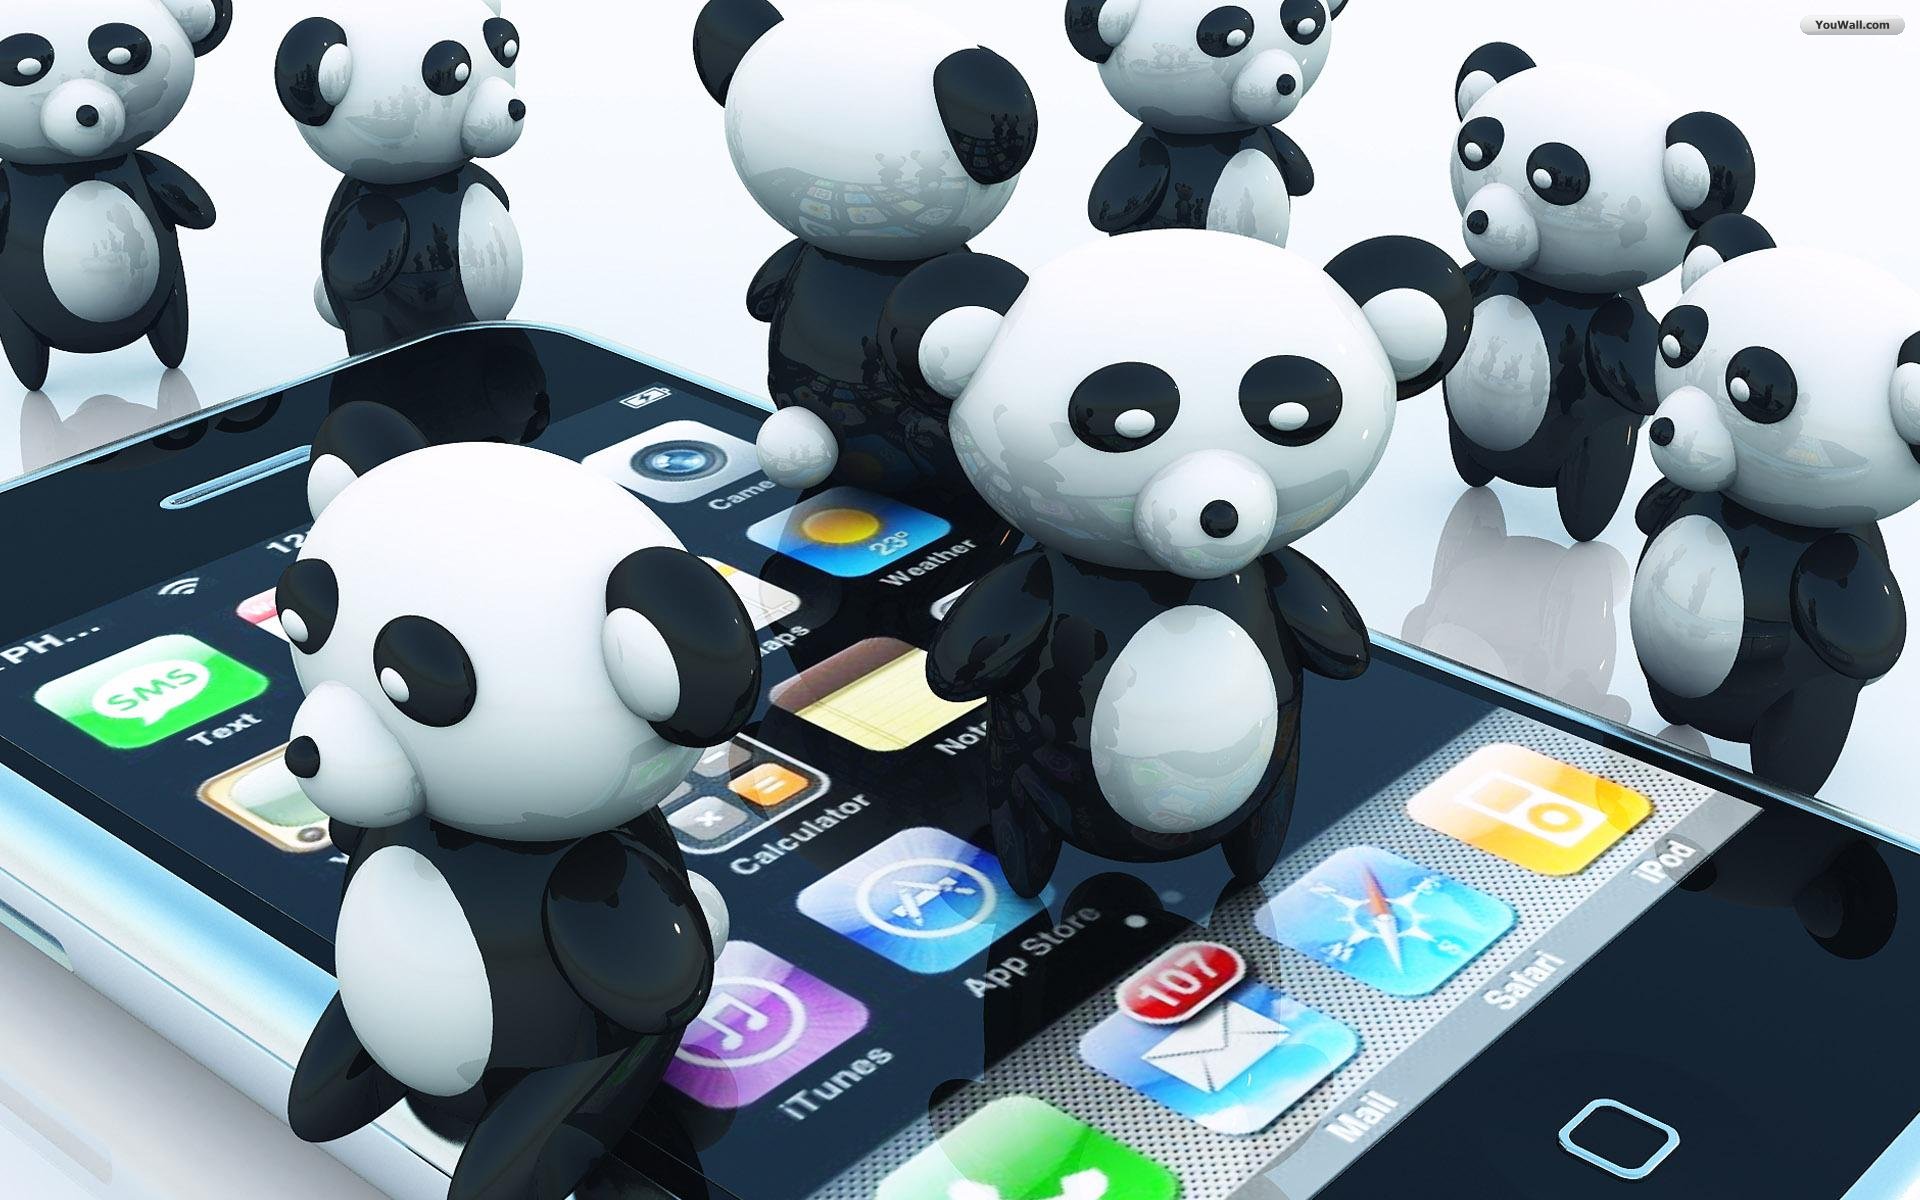 sfondi divertenti per iphone,panda,orso,cartone animato,felpa,tecnologia